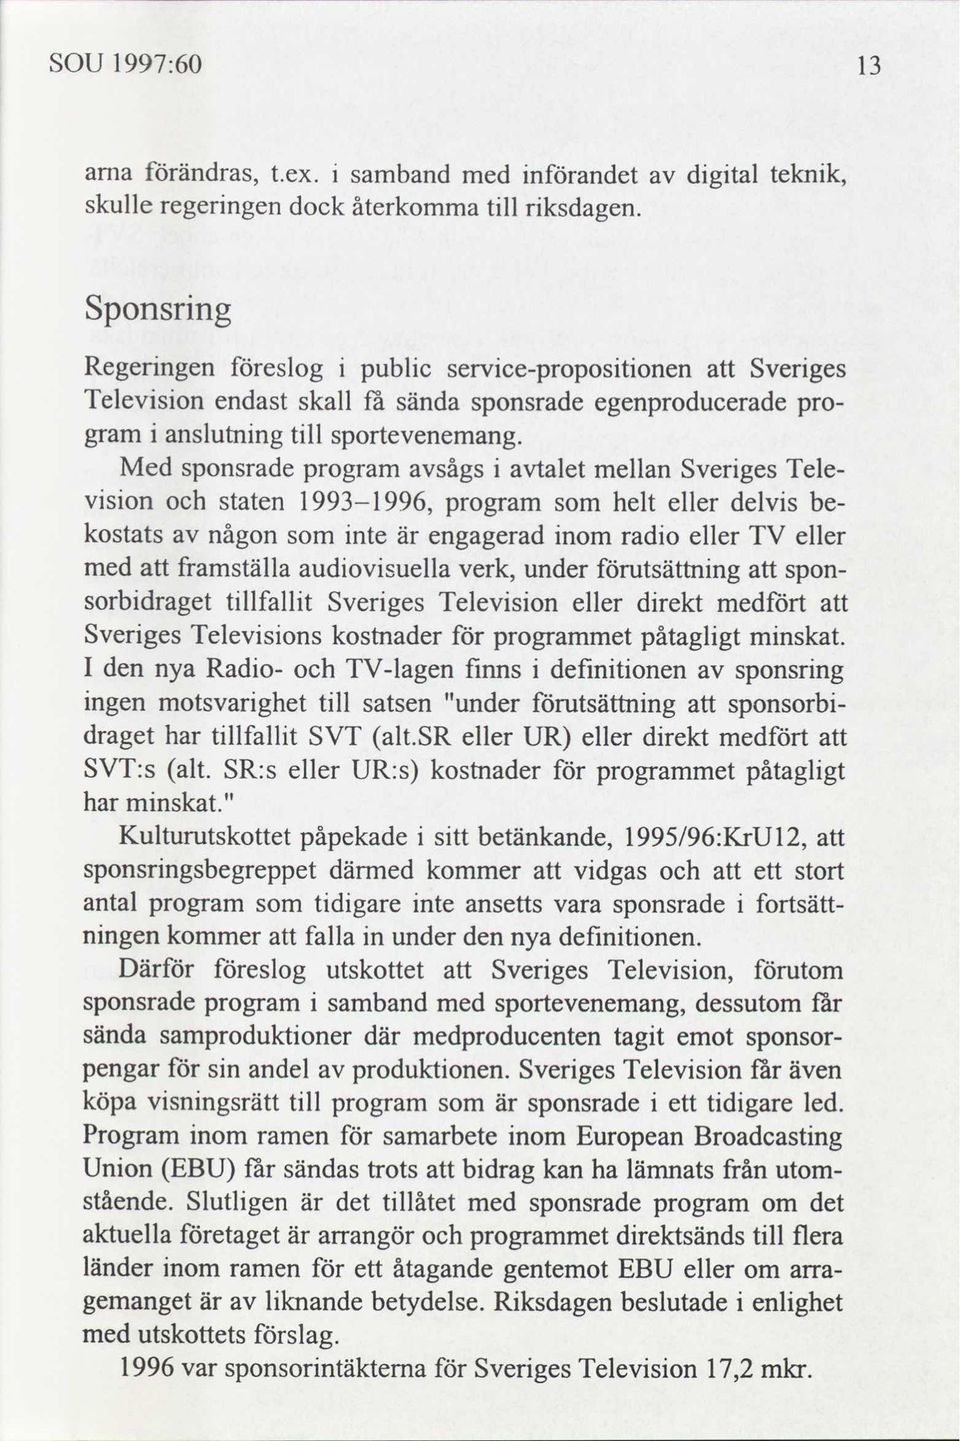 gram Med sponsrade program sågs talet mellan Sverges Televson staten 1993-1996, program helt eller delvs be- kostats någon nte är engagerad nom rado eller TV eller med framställa audovsuella verk,